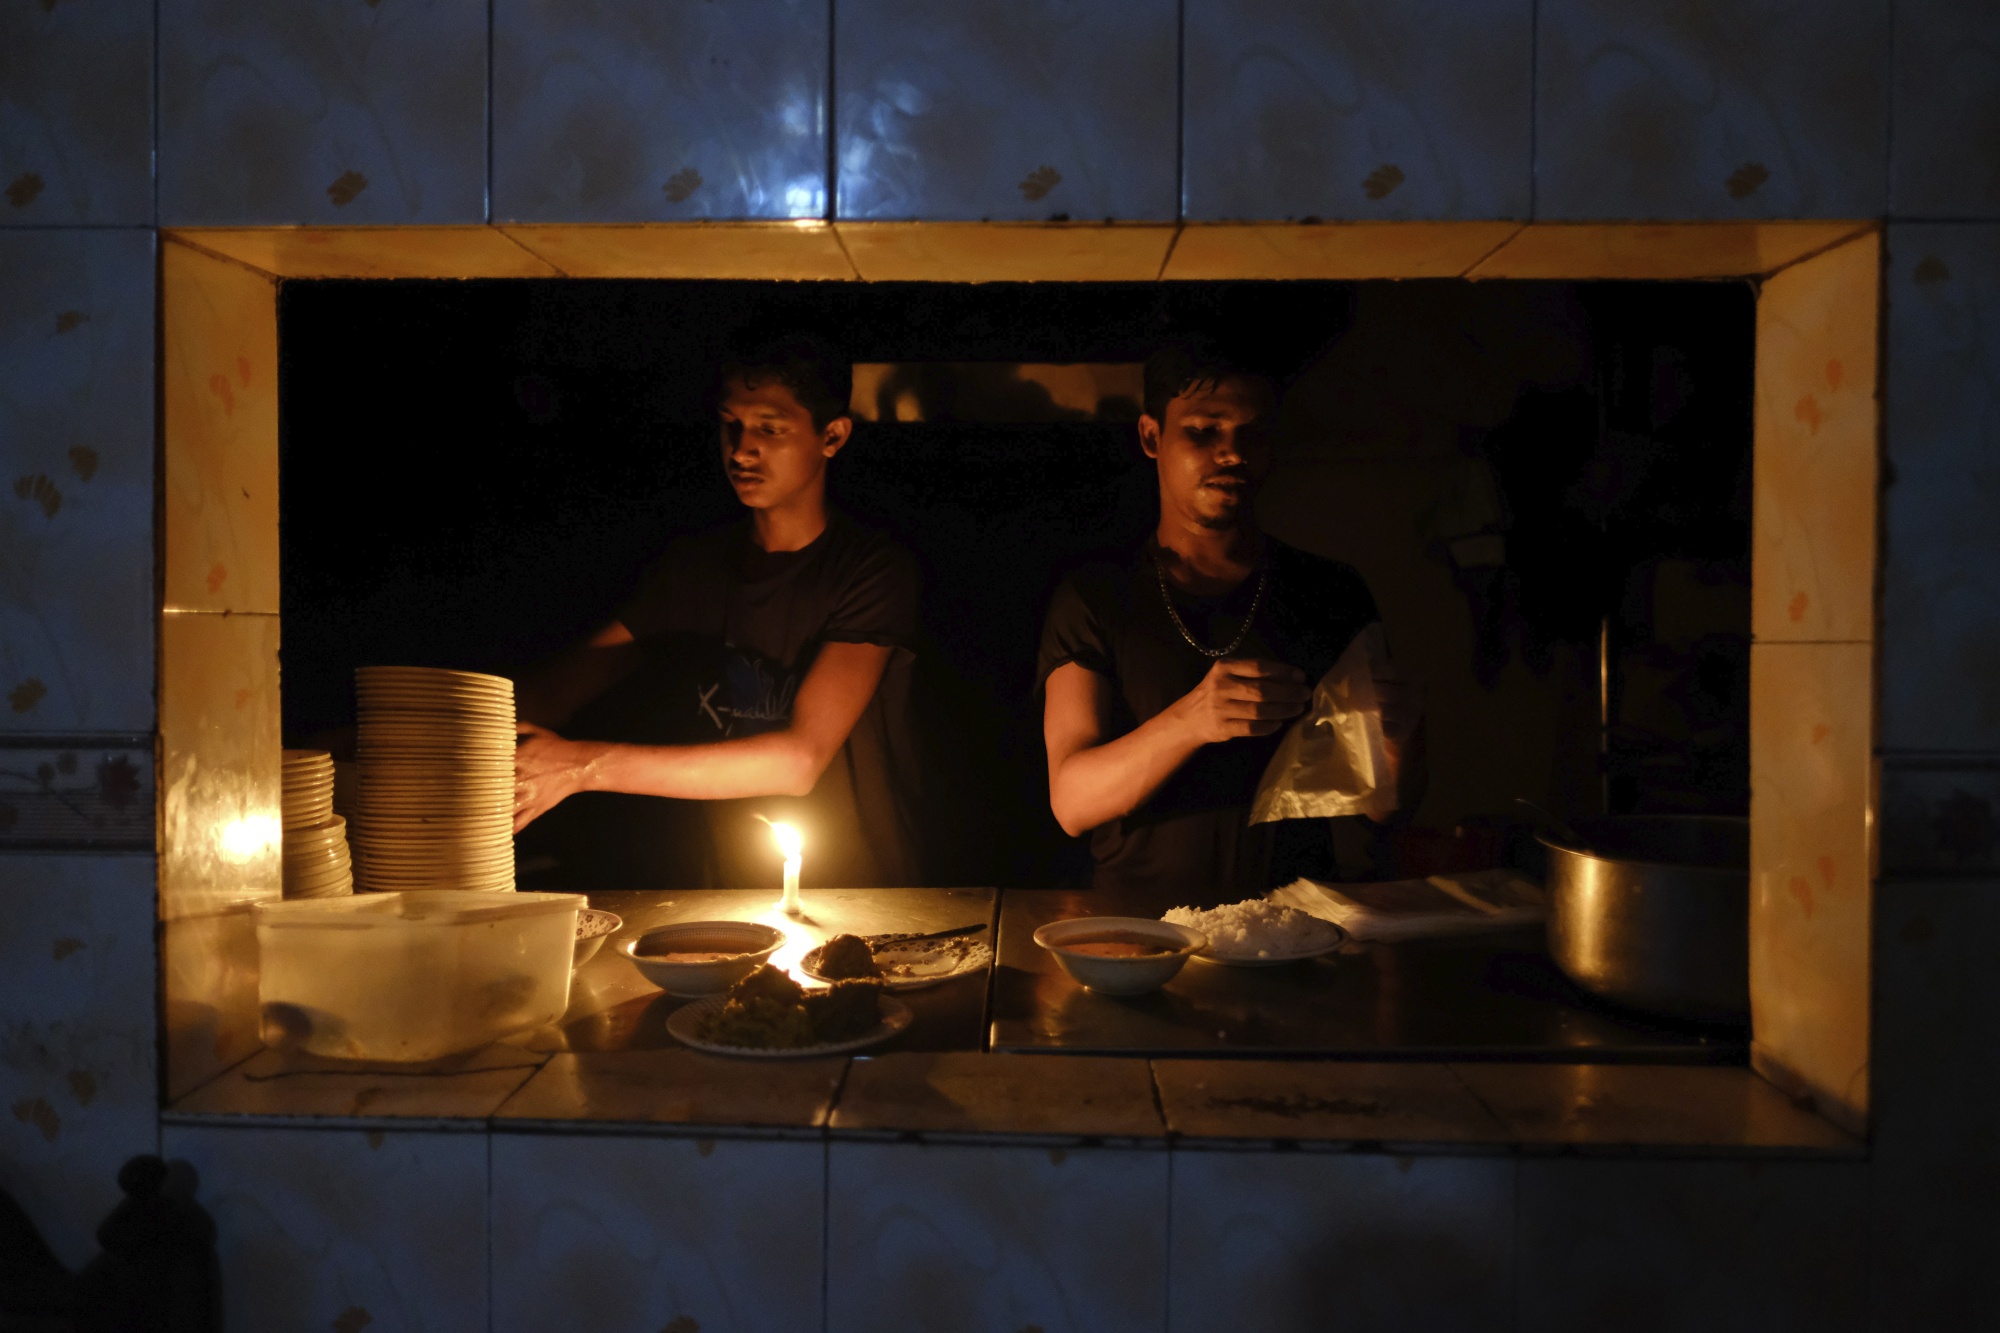 انقطاع الكهرباء في بنغلاديش